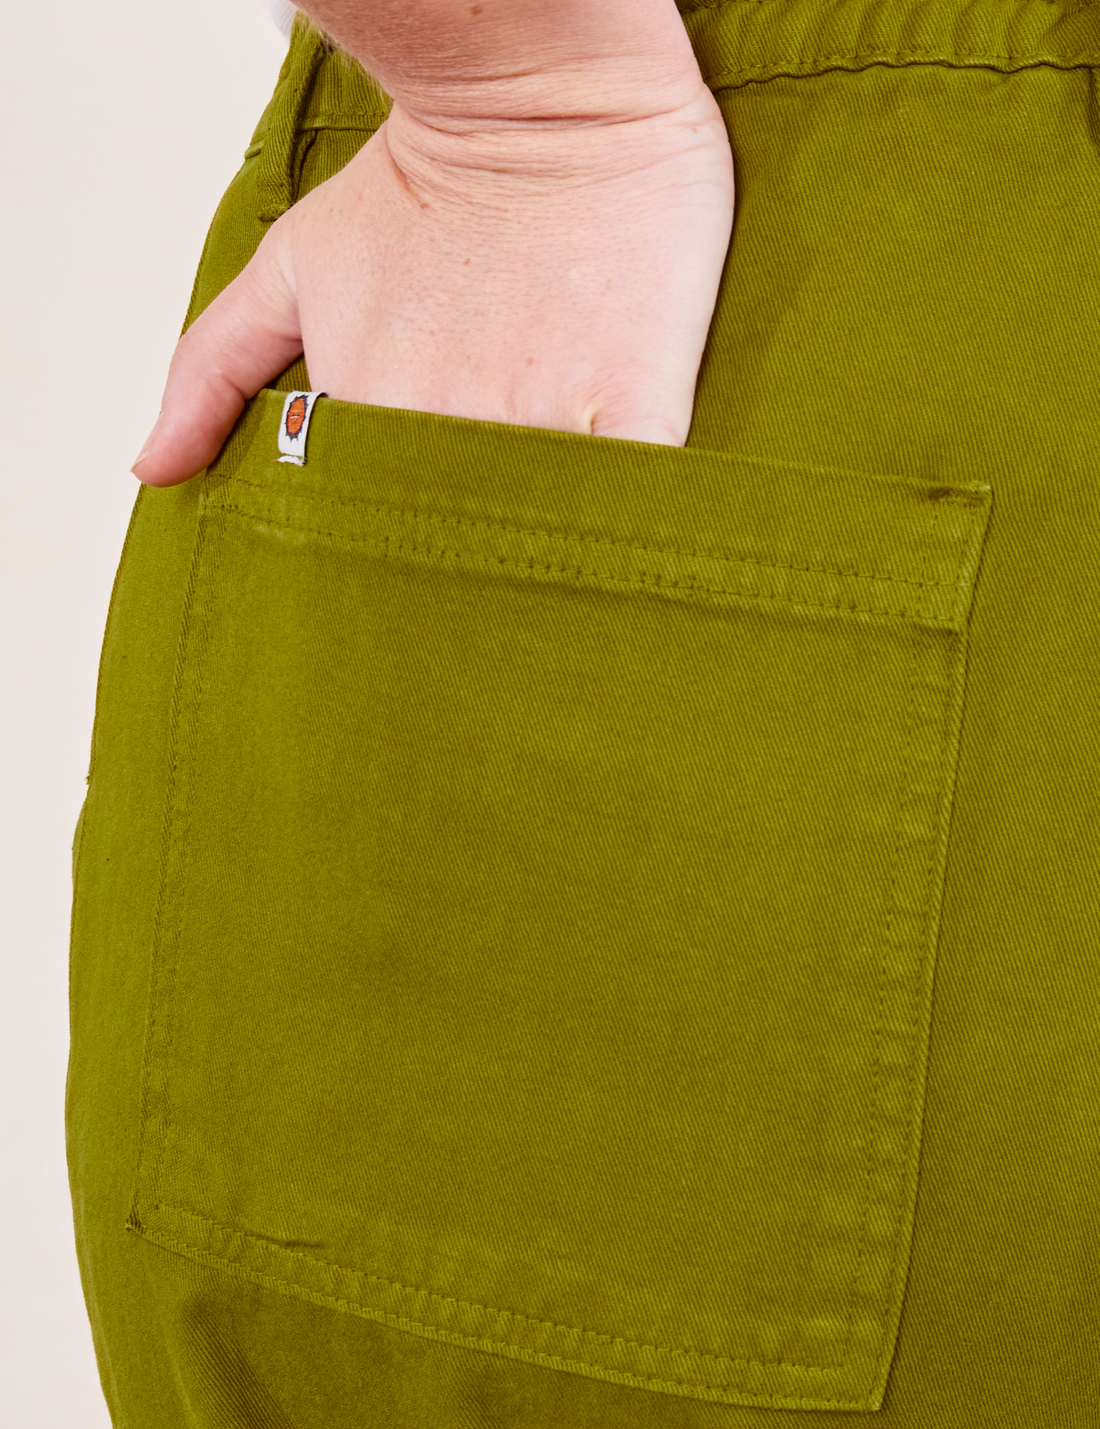 Work Pants in Olive Green back pocket close up